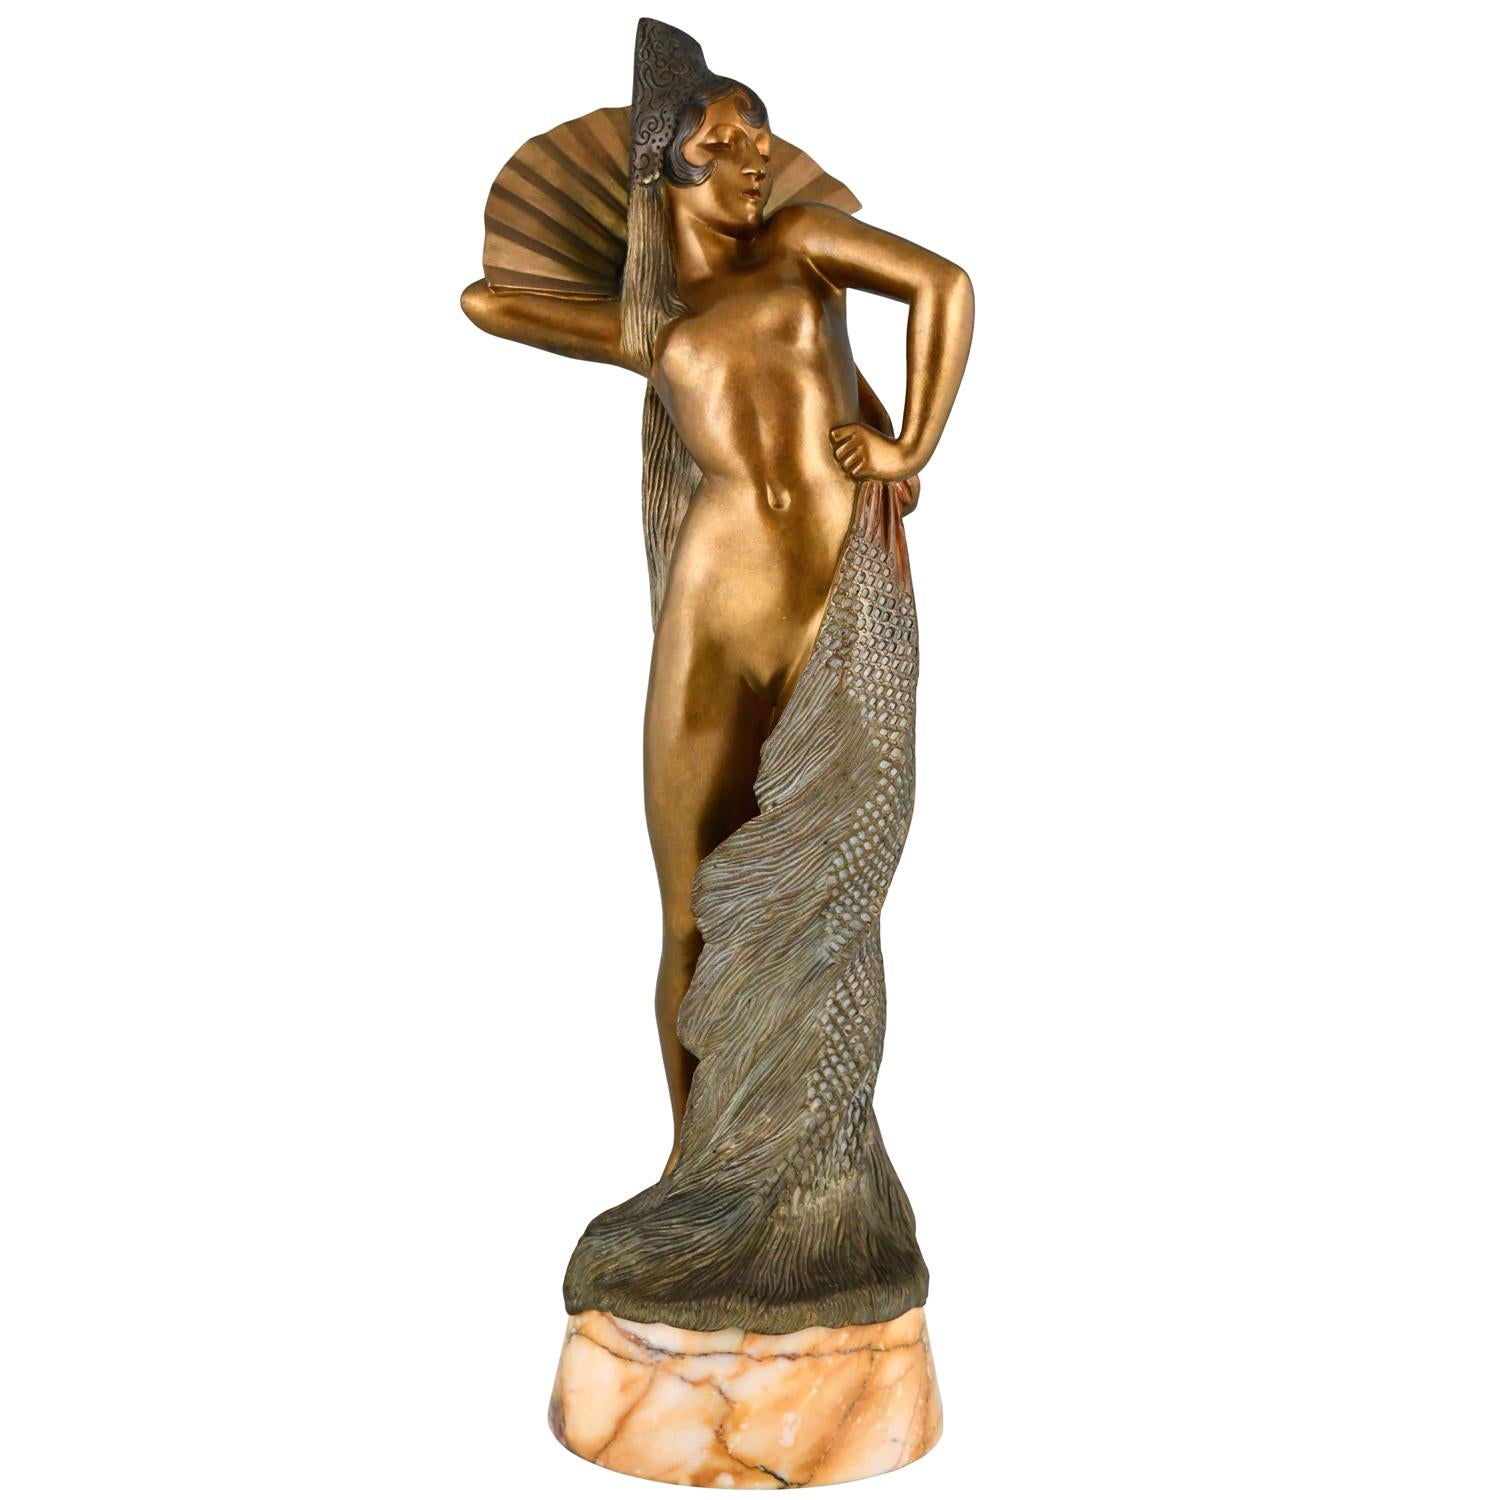 Sculpture en bronze Art déco d'une danseuse espagnole par Maurice Guiraud Rivière.
La sculpture est coulée en bronze, a une belle patine multicolore et repose sur un socle en marbre. 
France ca. 1925 